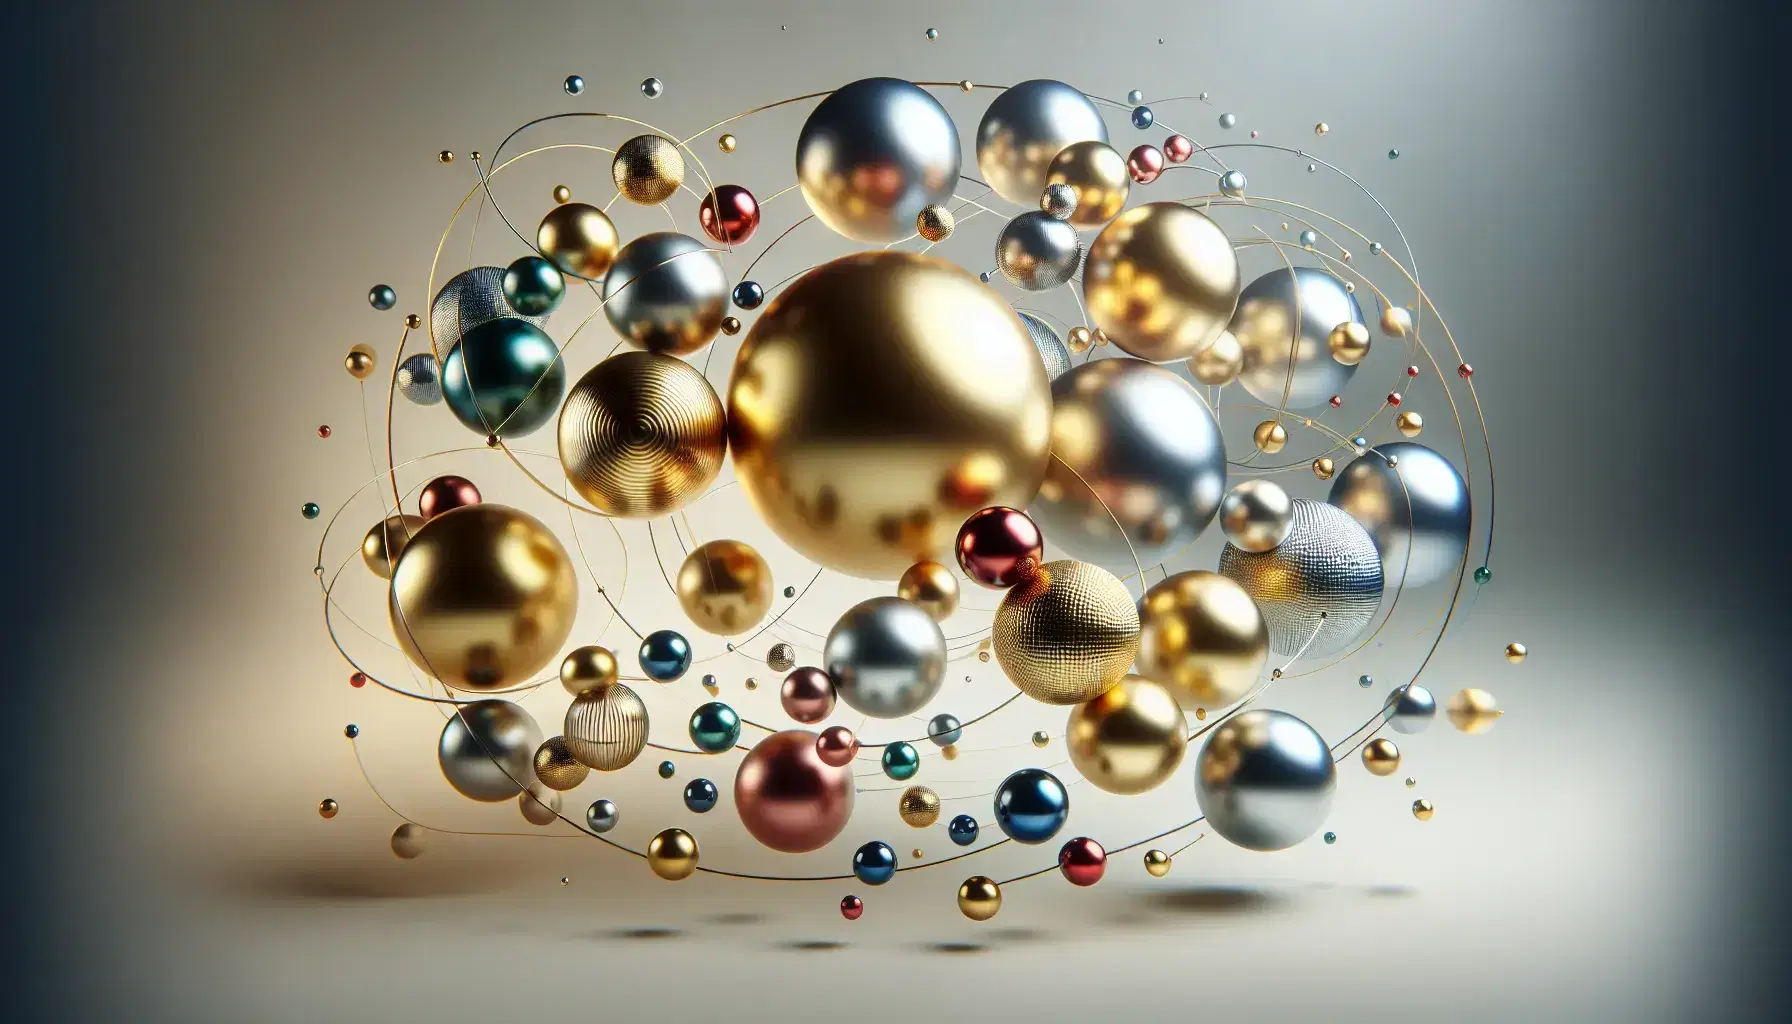 Esferas metálicas suspendidas de varios tamaños y colores con reflejos suaves y sombras leves sobre fondo gris claro, evocando un sistema orbital.